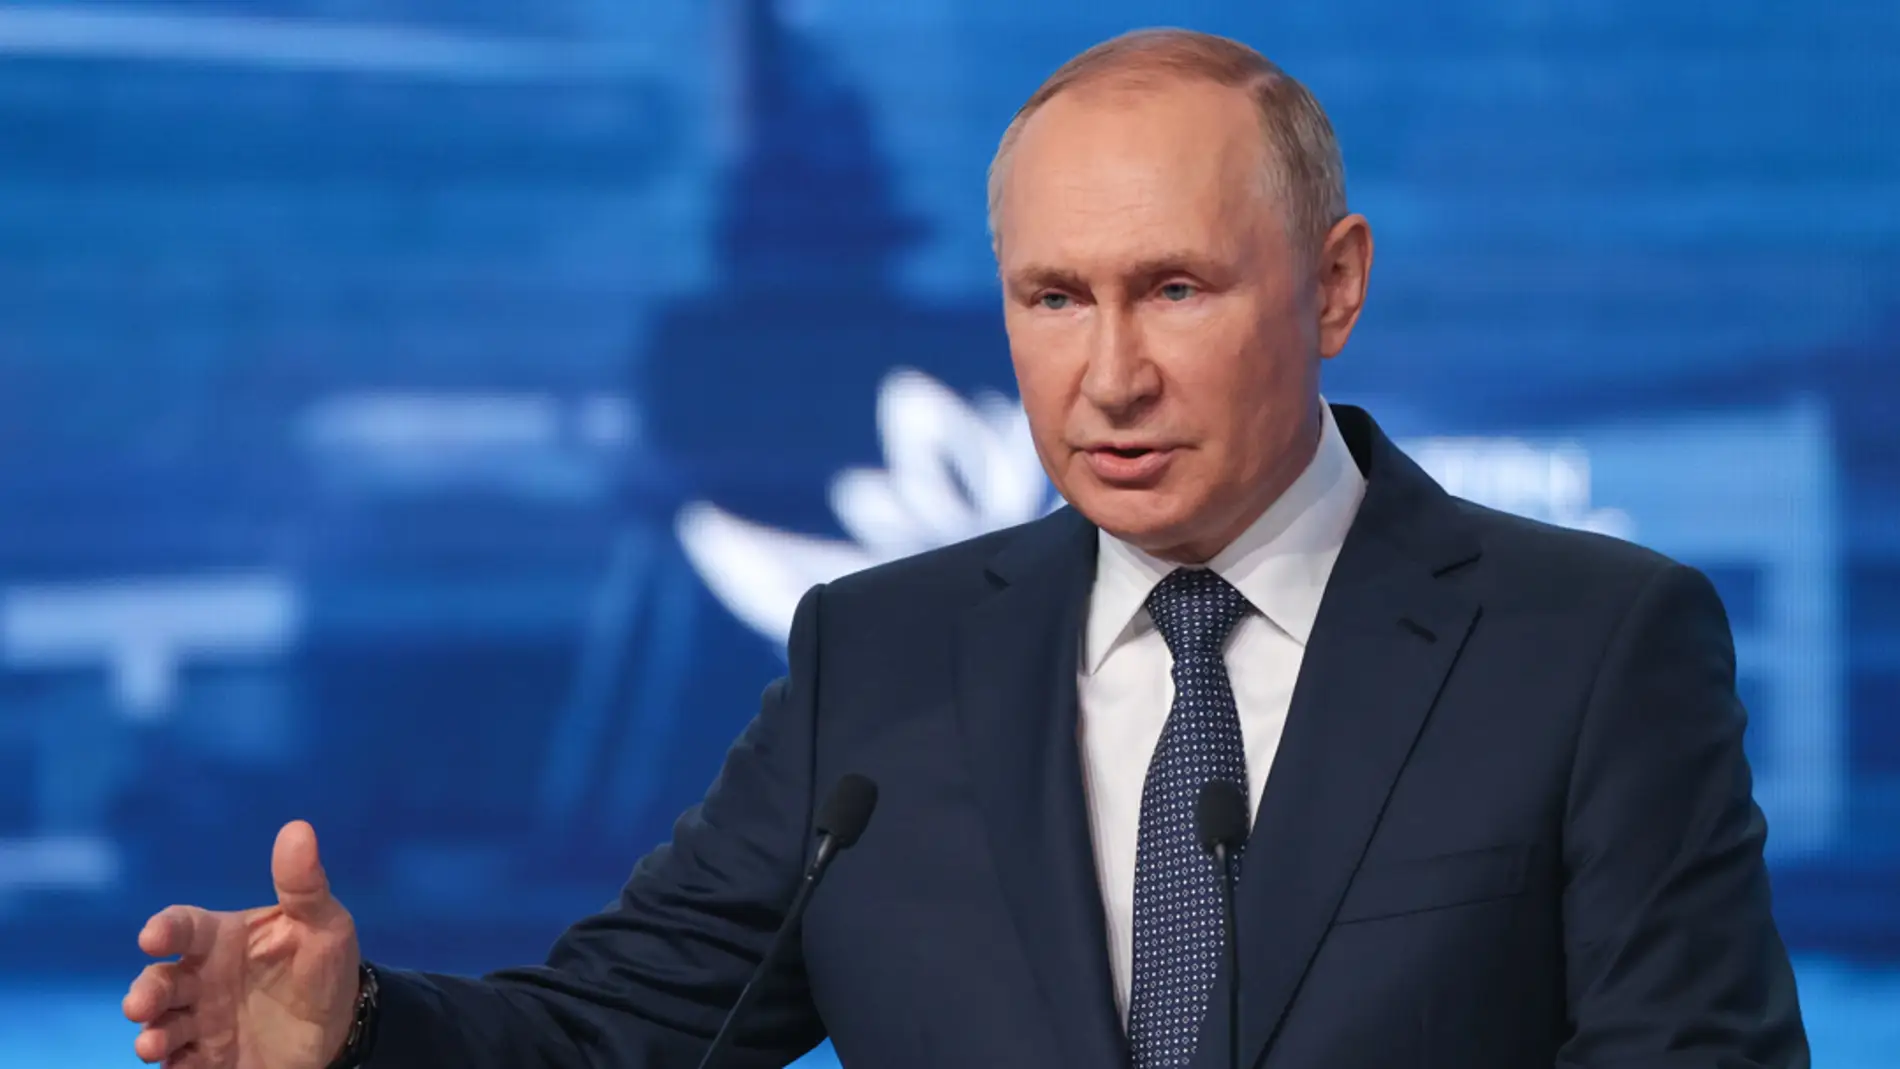 Imagen cedida por TASS del presidente ruso, Vladimir Putin, durante su intervención en un foro económico en Vladivostok.